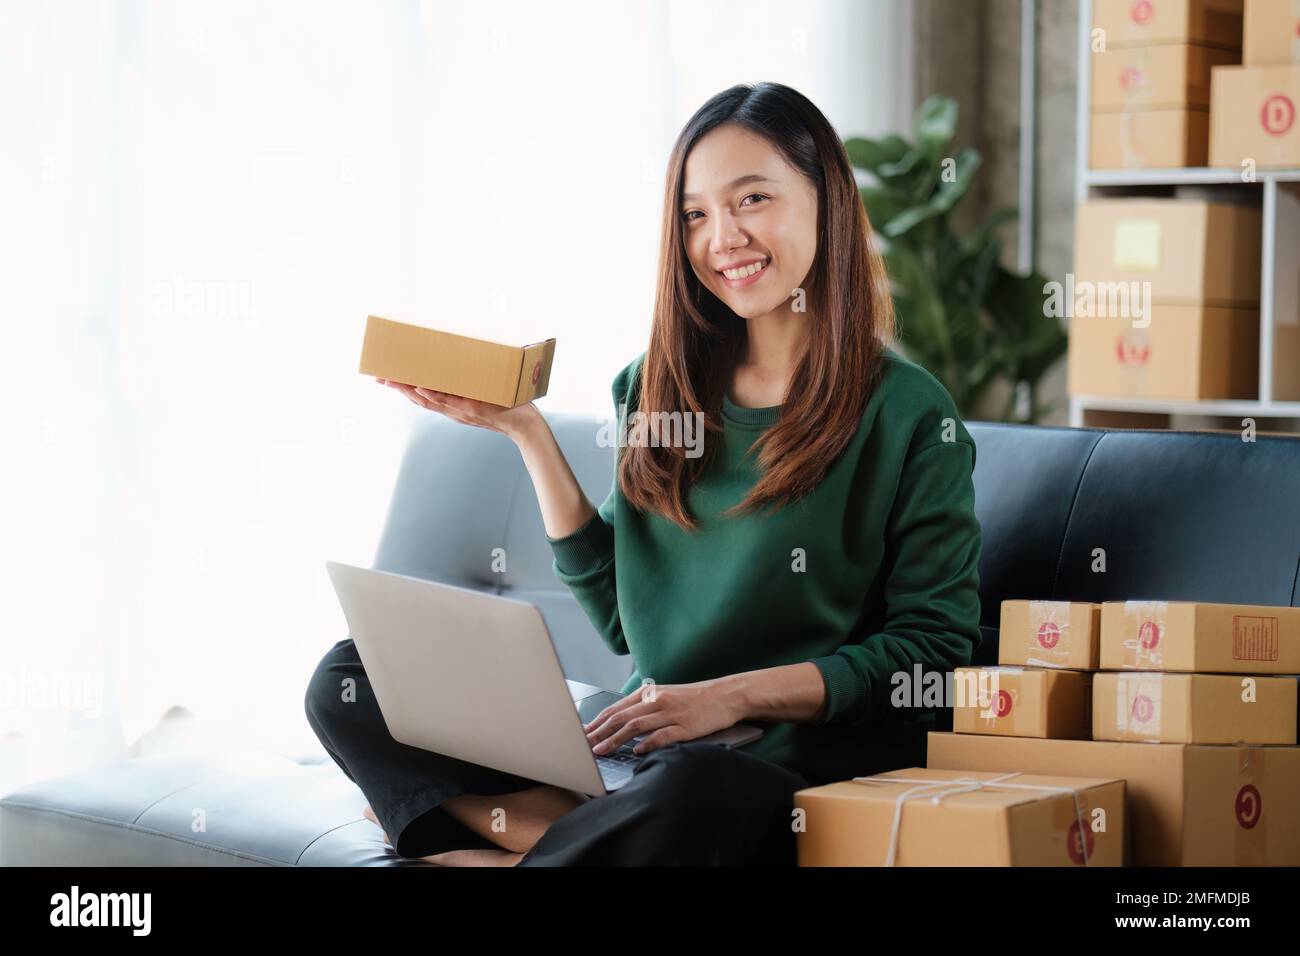 Portrait de la jeune femme asiatique PME travaillant avec une boîte à la maison. Propriétaire de petite entreprise entrepreneur PME et concept de livraison Banque D'Images